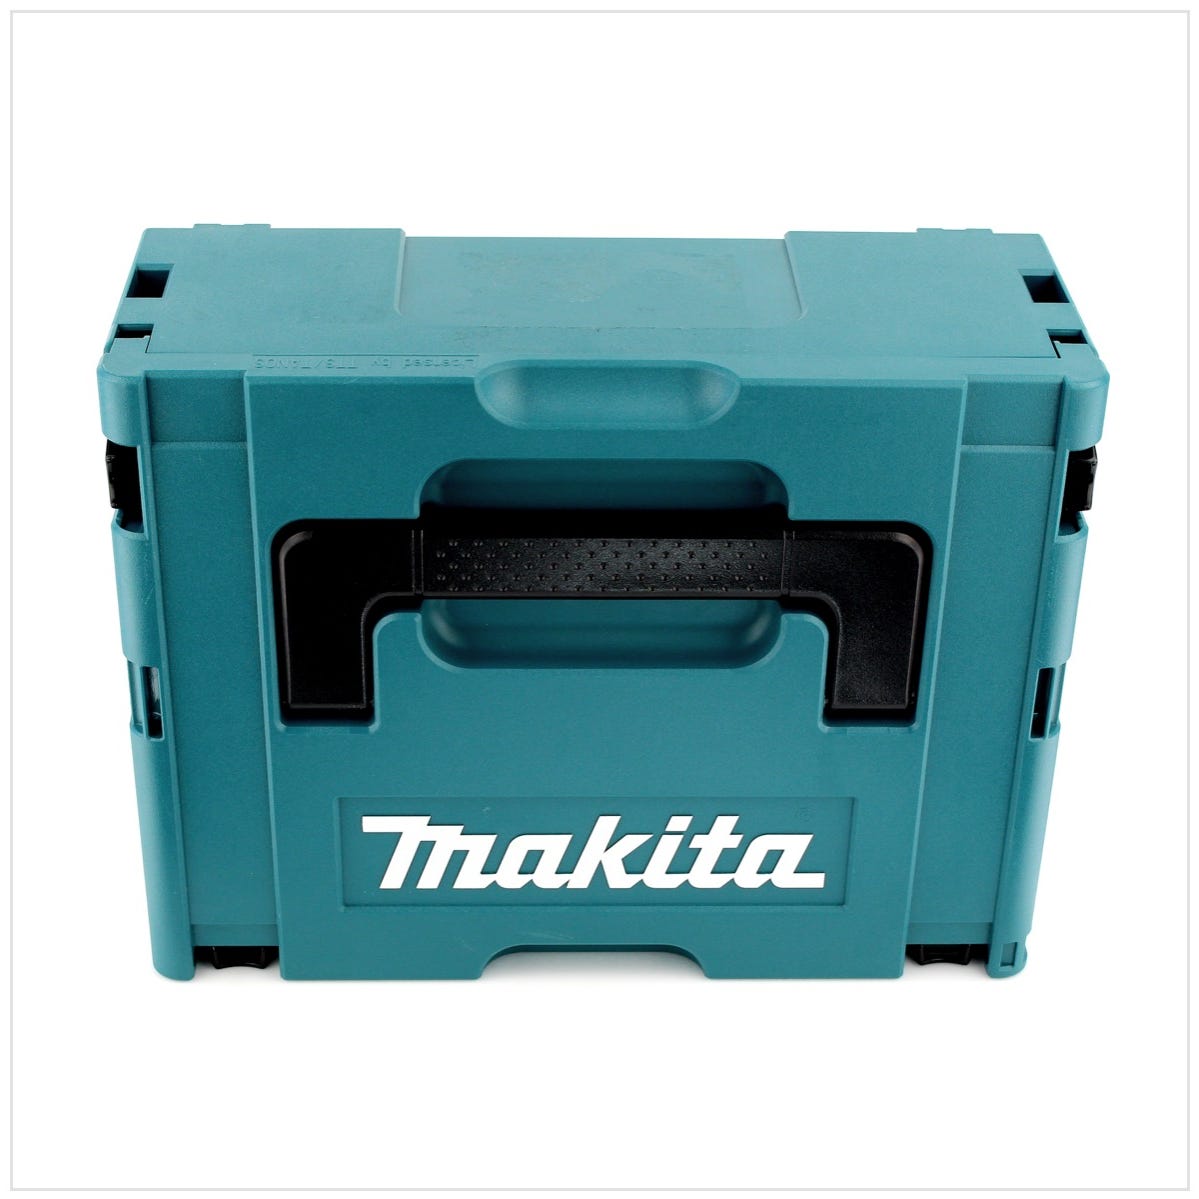 Makita DTW 285 Y1J-P 18 V Li-Ion Boulonneuse à chocs sans fil avec boîtier Makpac 2 + 2x Batteries BL 1820 2,0 Ah + Chargeur rapide DC 18 RC 2